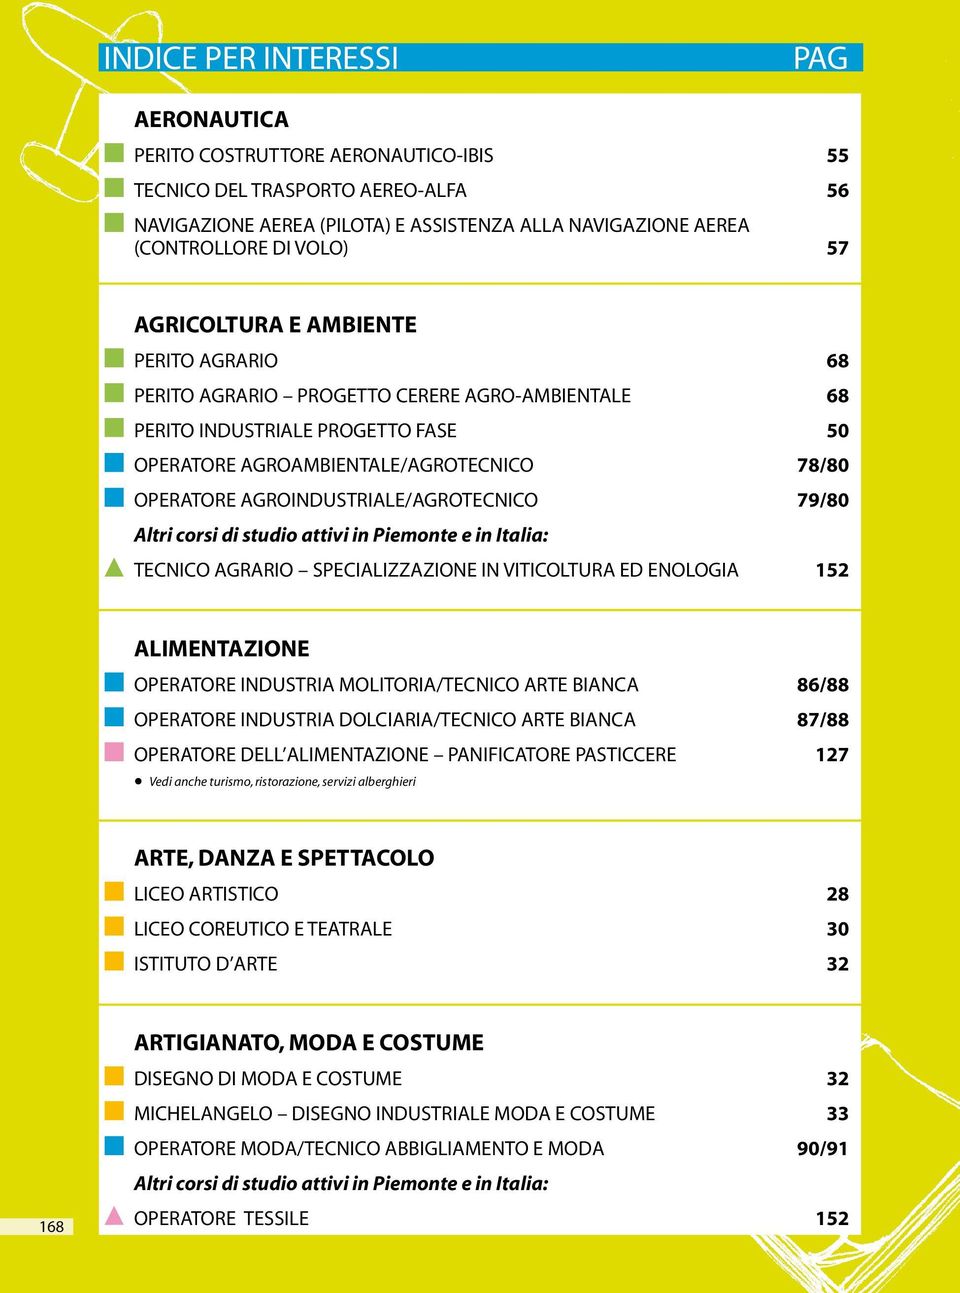 agroindustriale/agrotecnico 79/80 Altri corsi di studio attivi in Piemonte e in Italia: tecnico agrario specializzazione in viticoltura ed enologia 152 Alimentazione operatore industria